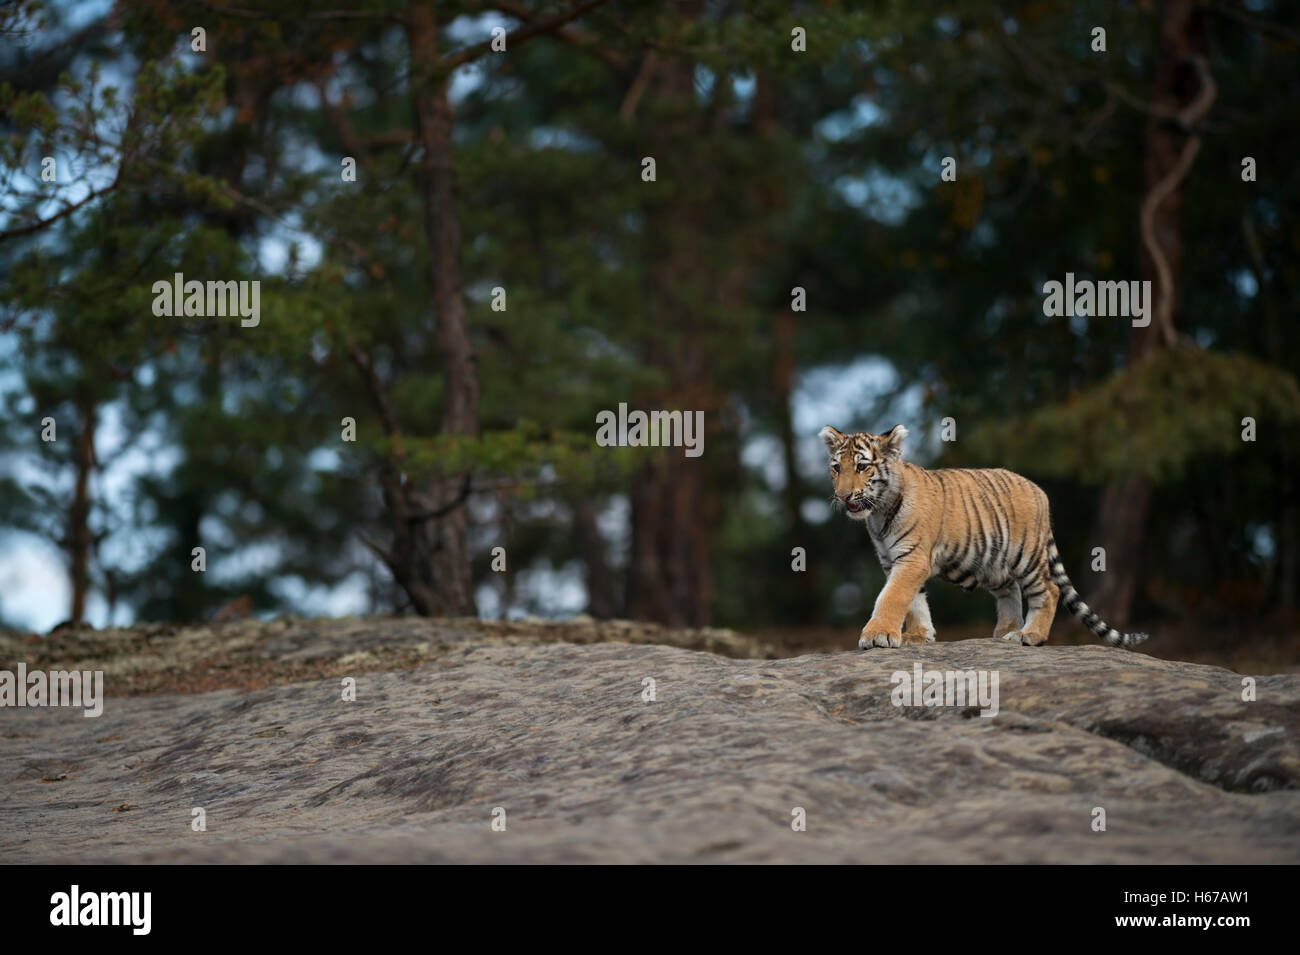 Royal tigre du Bengale (Panthera tigris ), jeune animal dans l'habitat, à la lisière d'une forêt, marchant sur une dalle de pierre. Banque D'Images